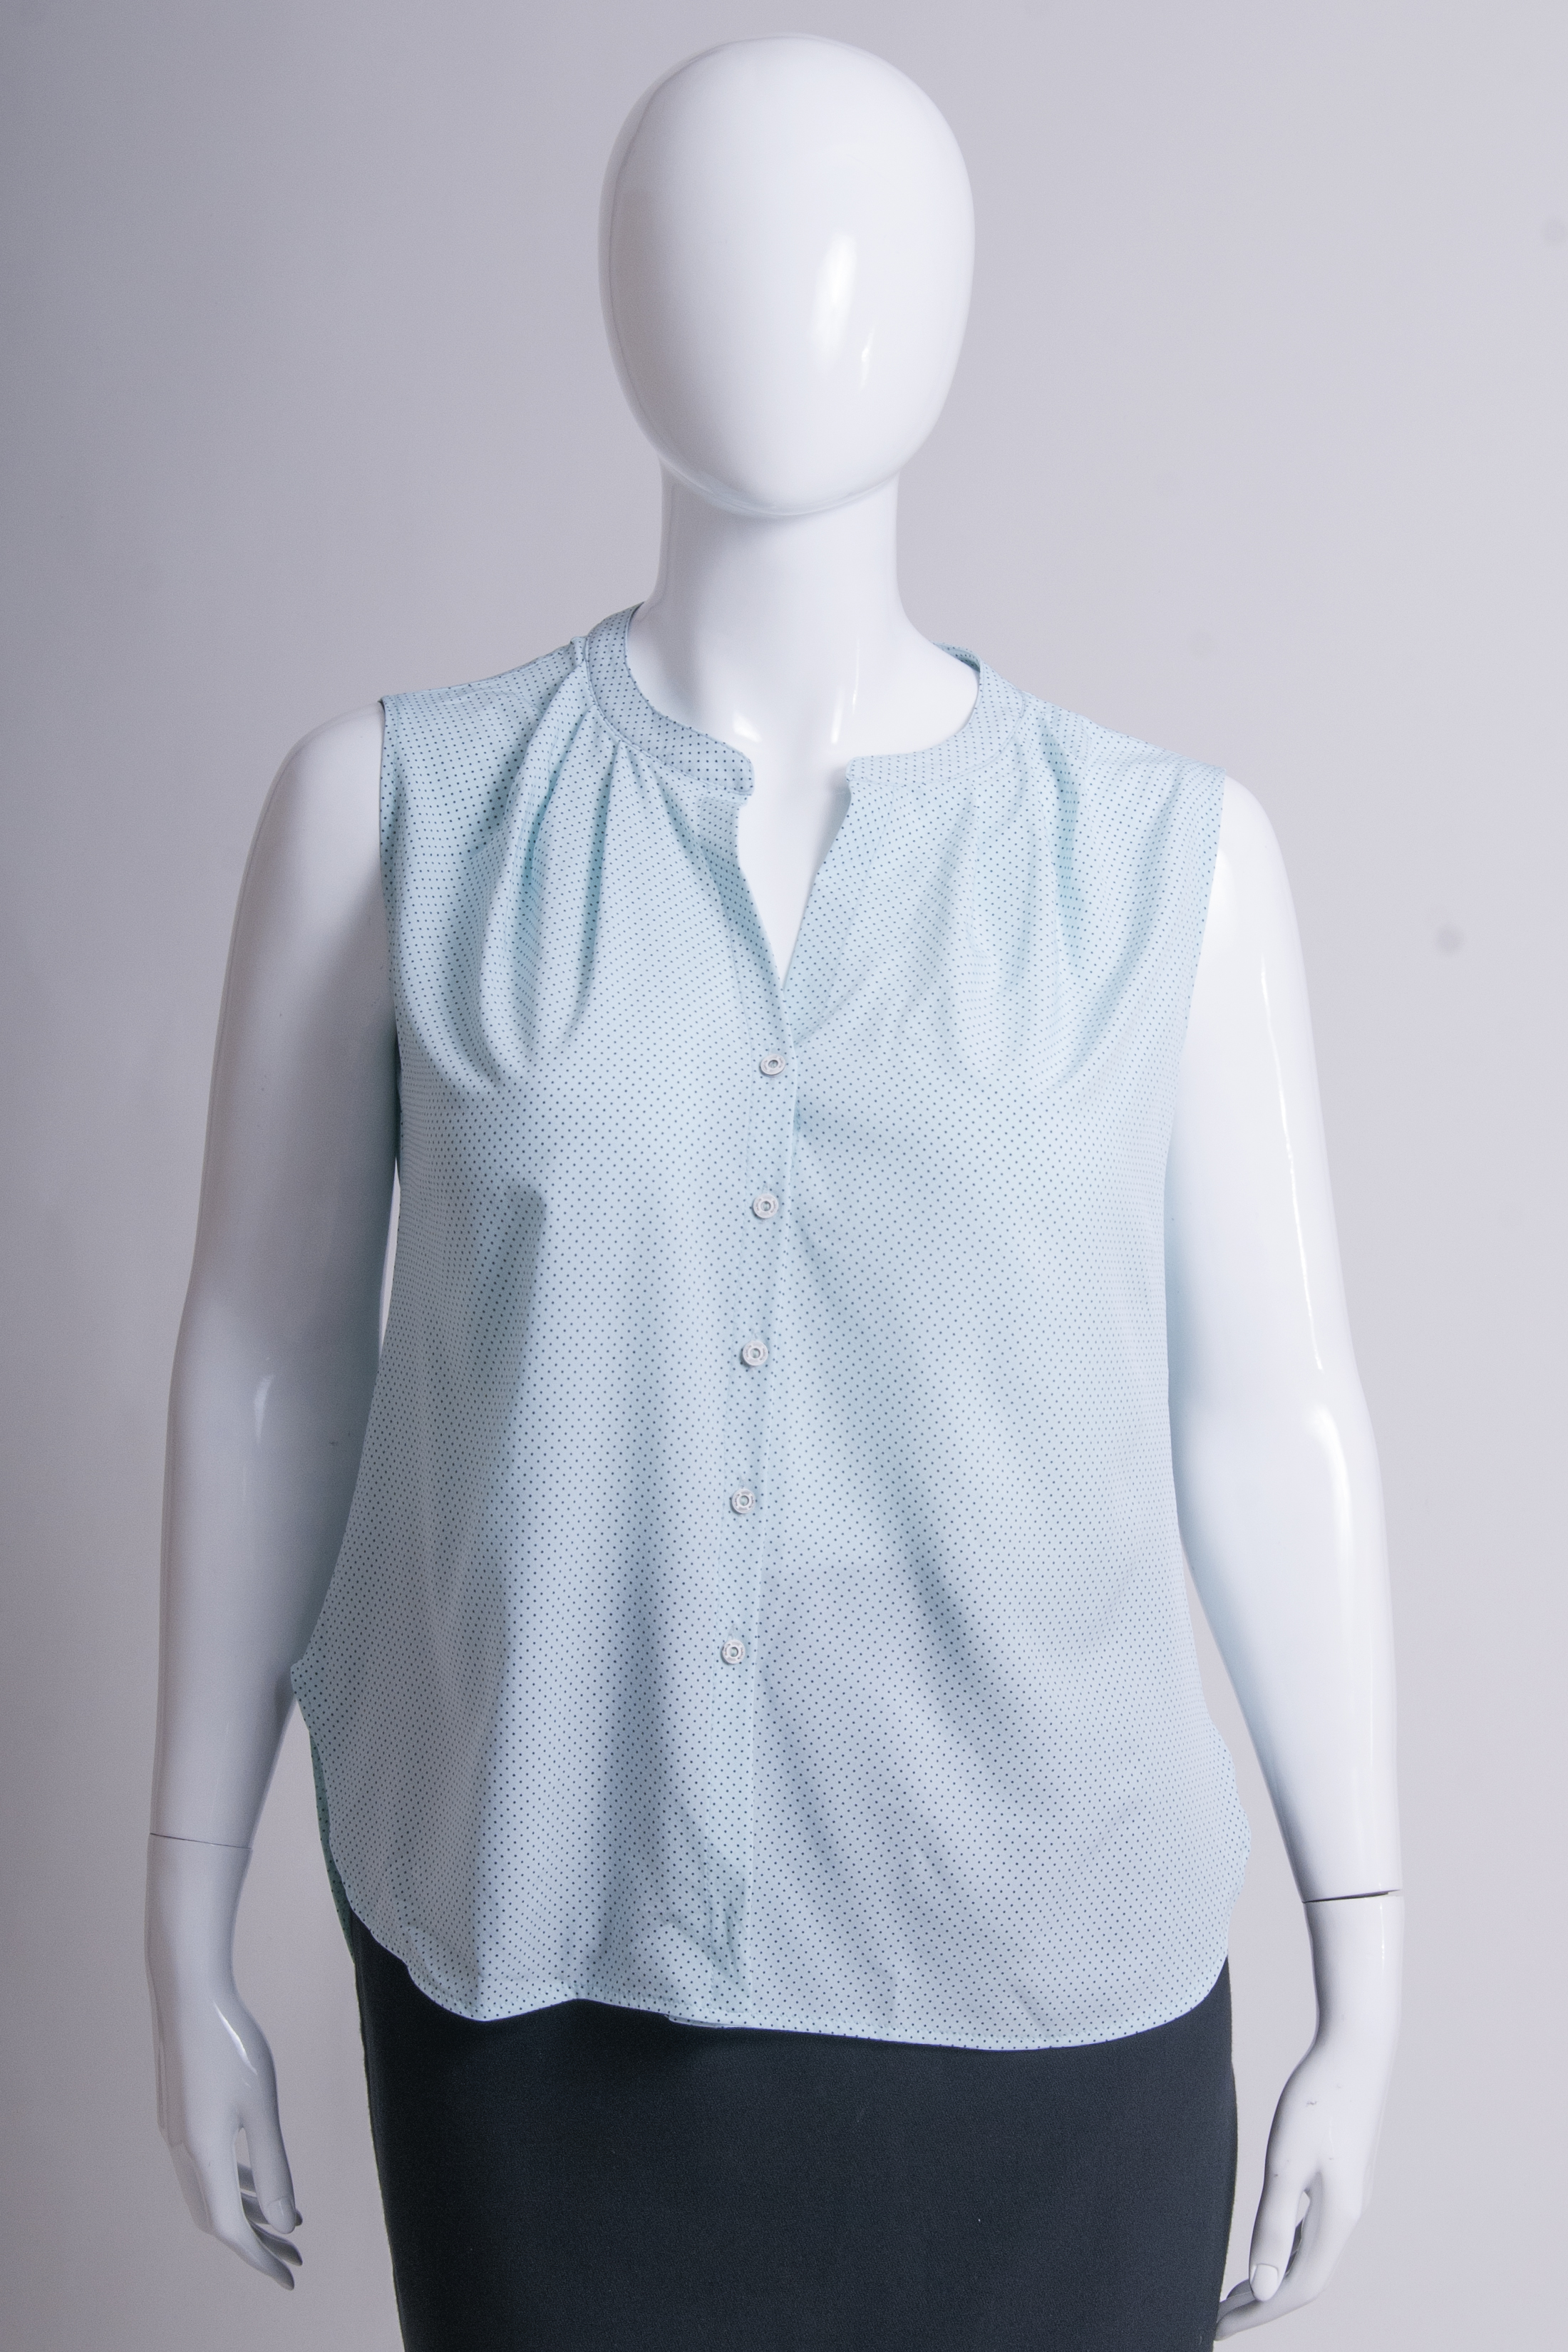 Блуза PL4-445 купить на сайте производителя